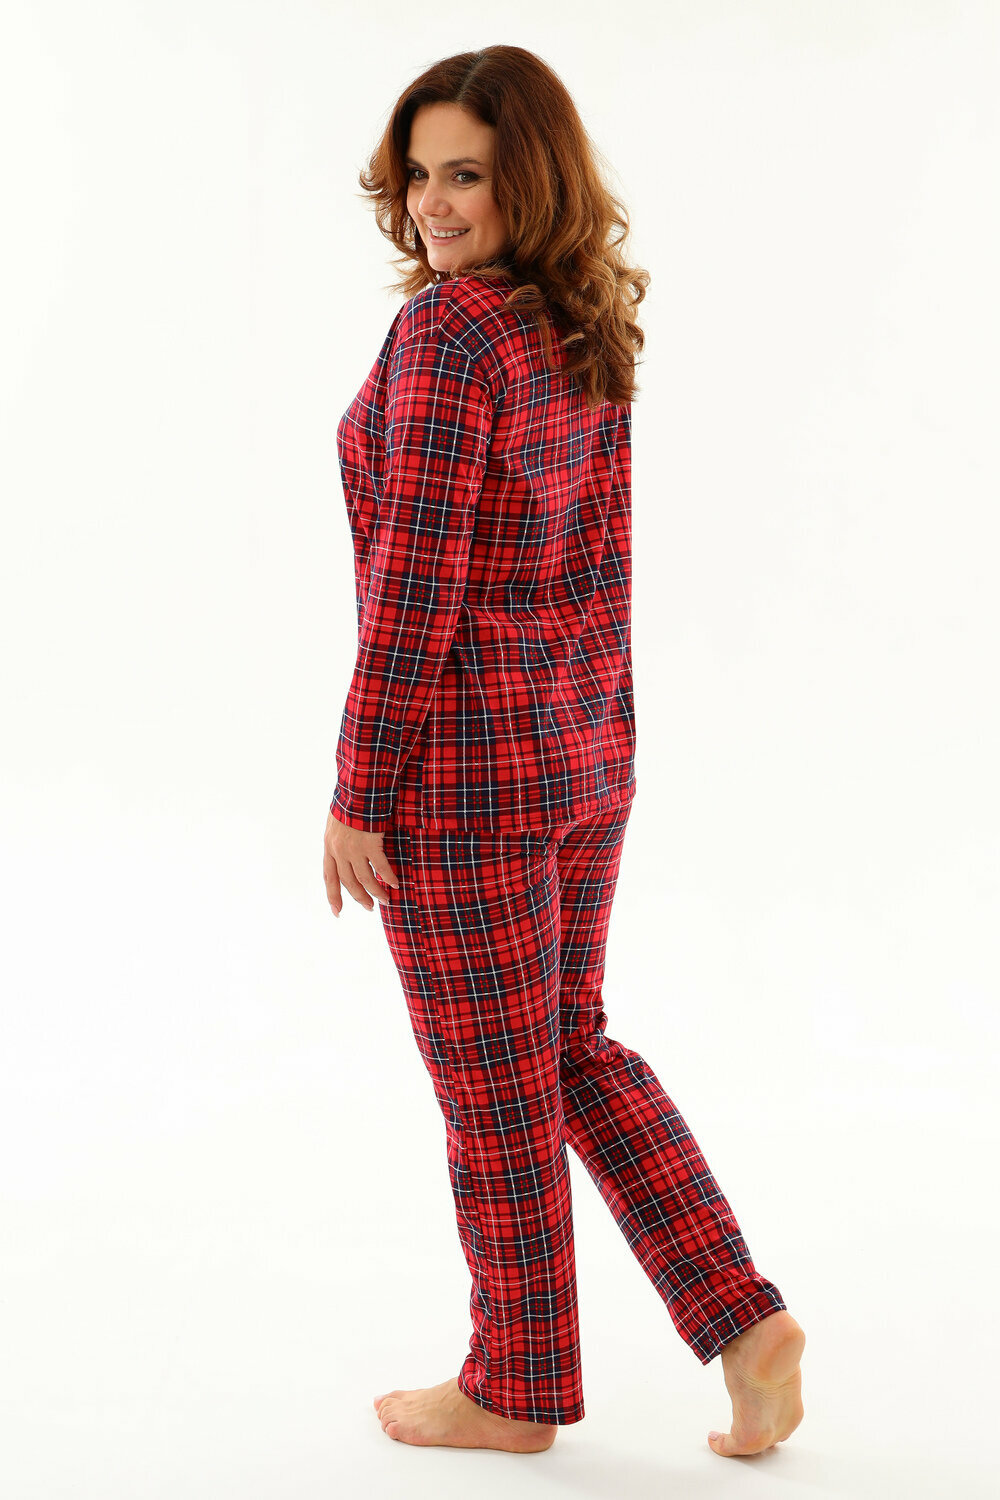 Женский домашний костюм с брюками Натали, красная клетка, размер 56 - фотография № 10